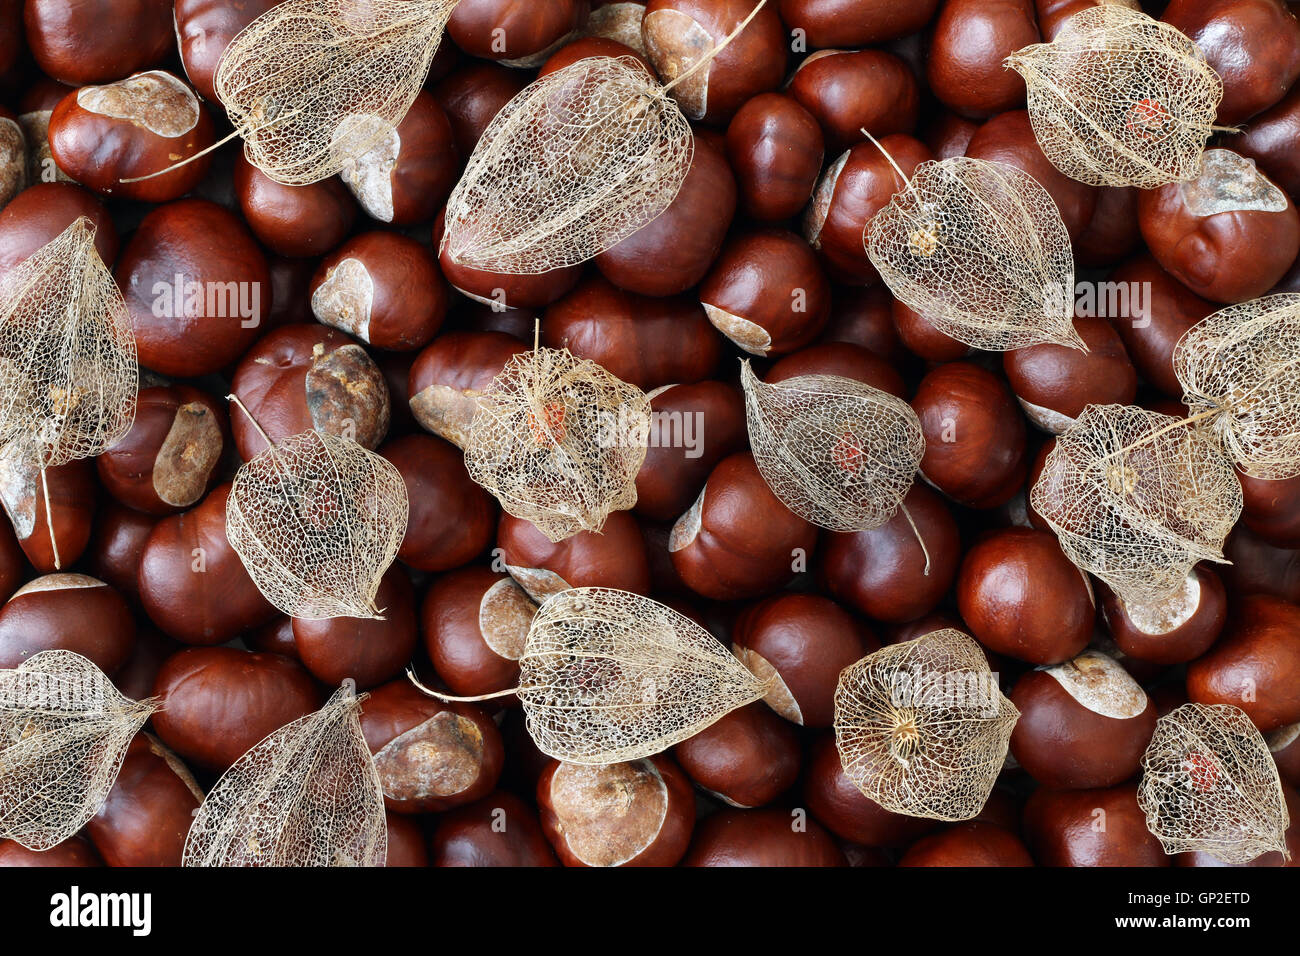 Los frutos secos de la uchuva de castañas Foto de stock